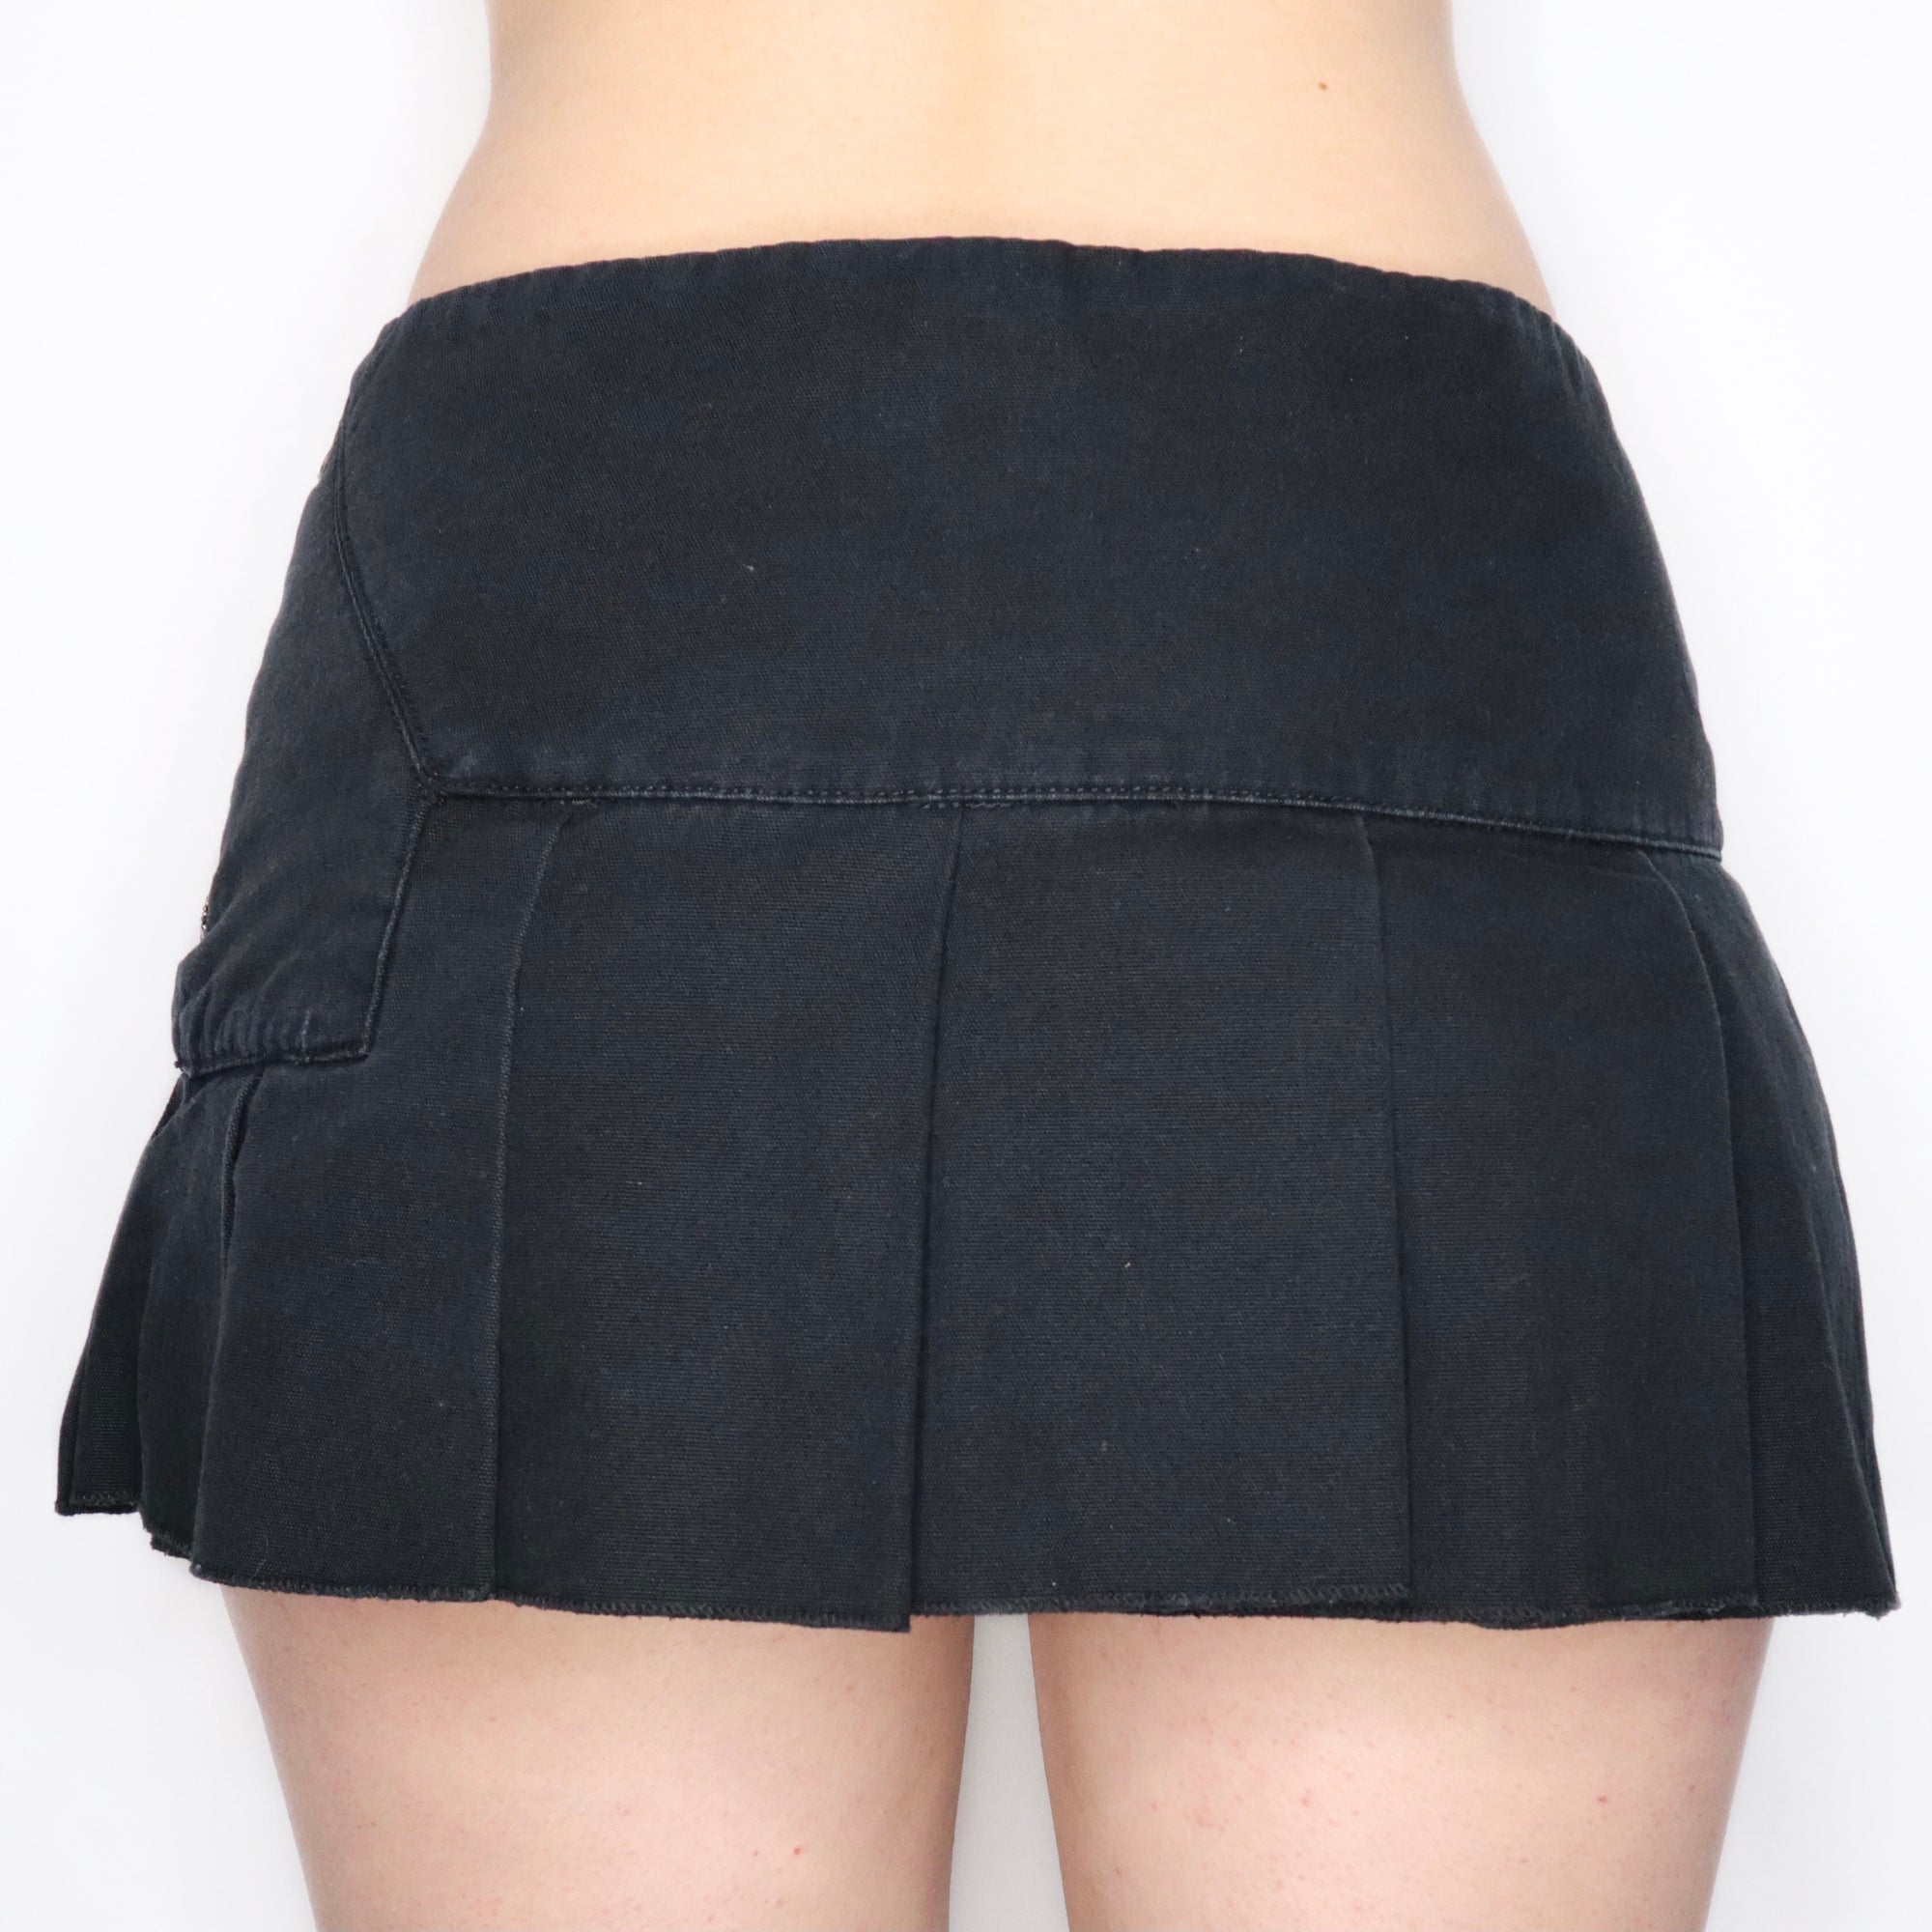 Vintage Early 2000s Pleated Black Mini Skirt